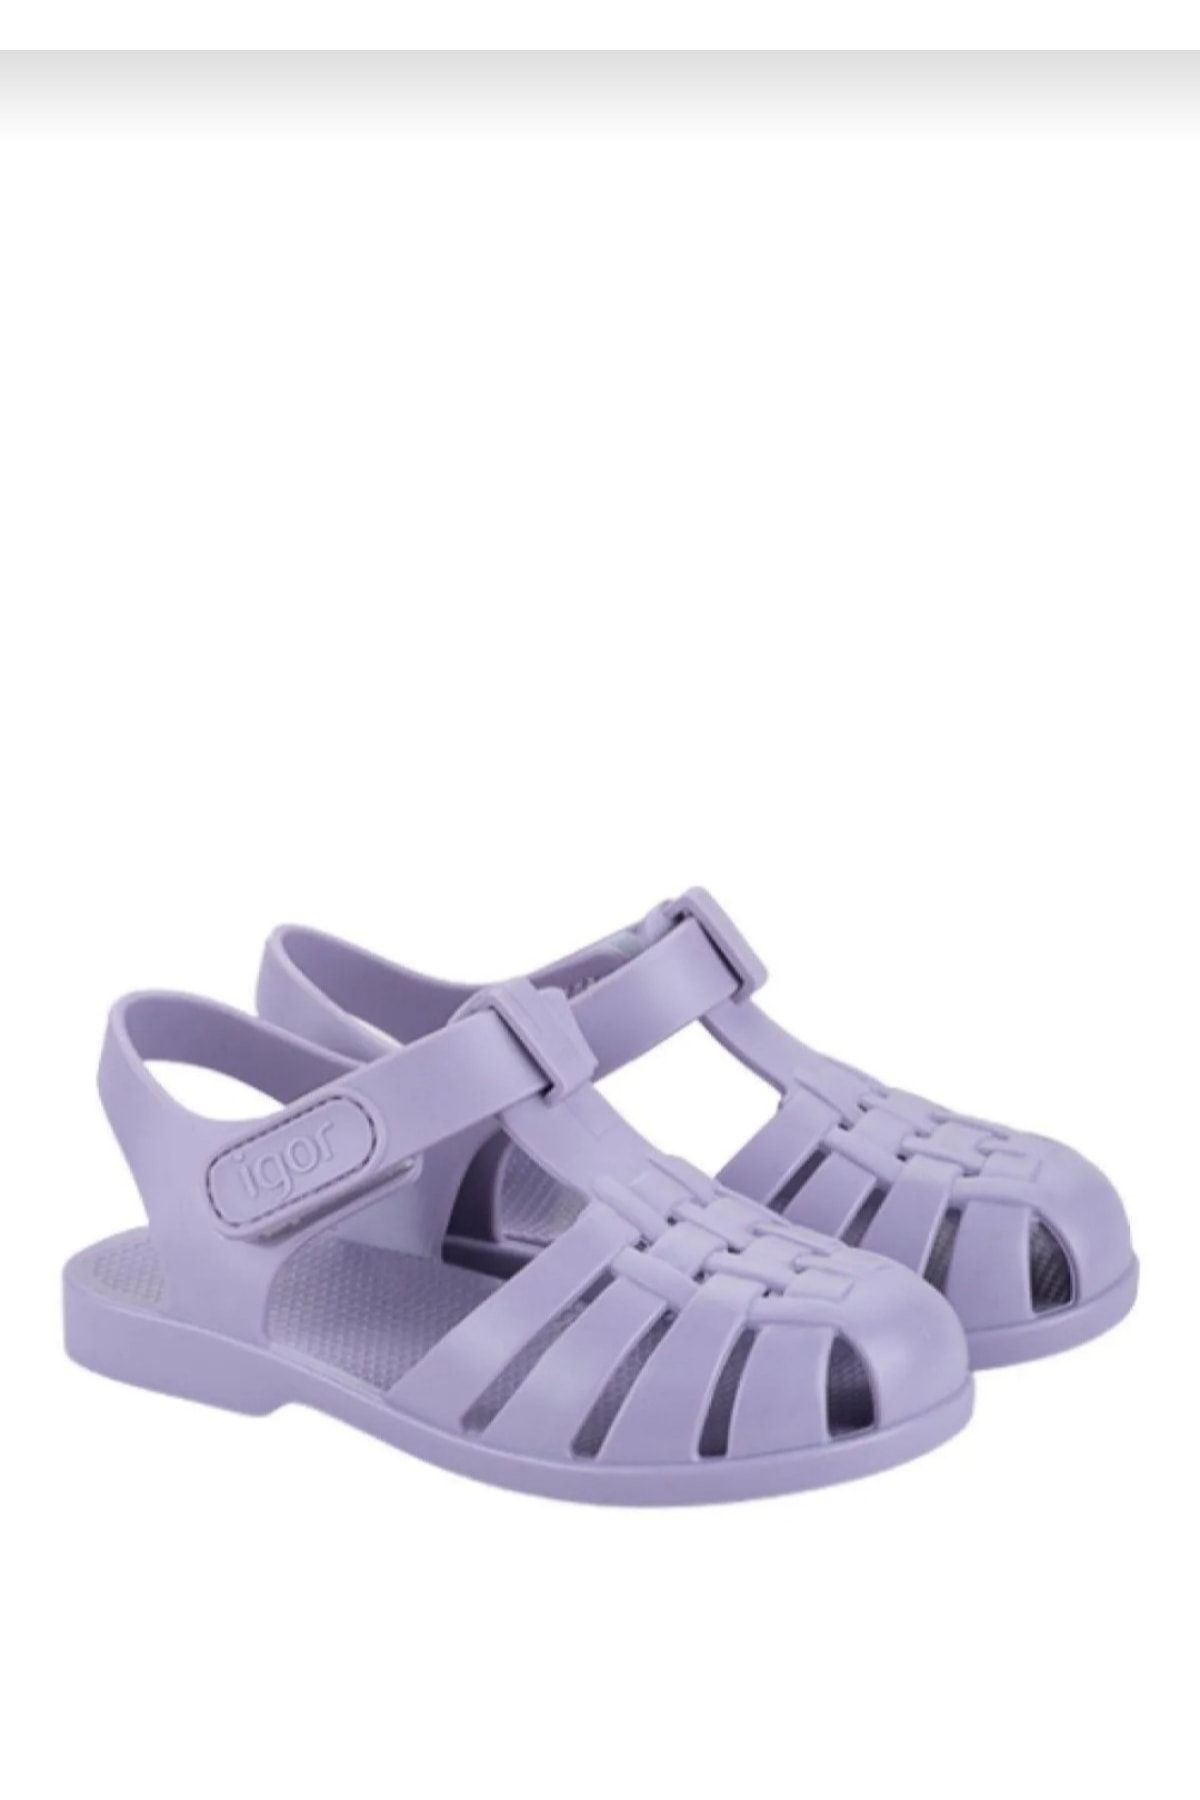 IGOR Clasica Velcro Kız/erkek Çocuk Sandalet S10288